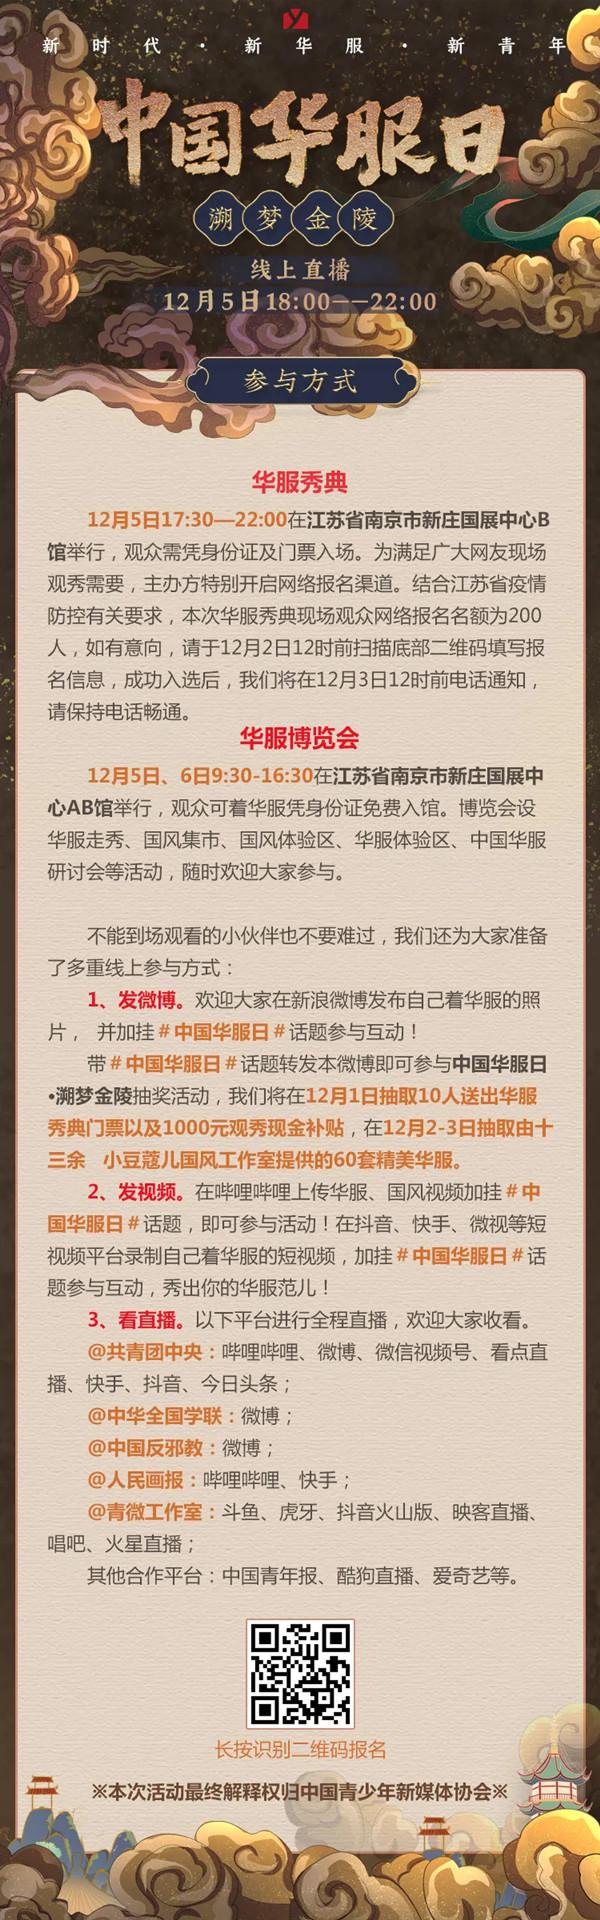 2020南京中国华服日时间及嘉宾名单-活动详情